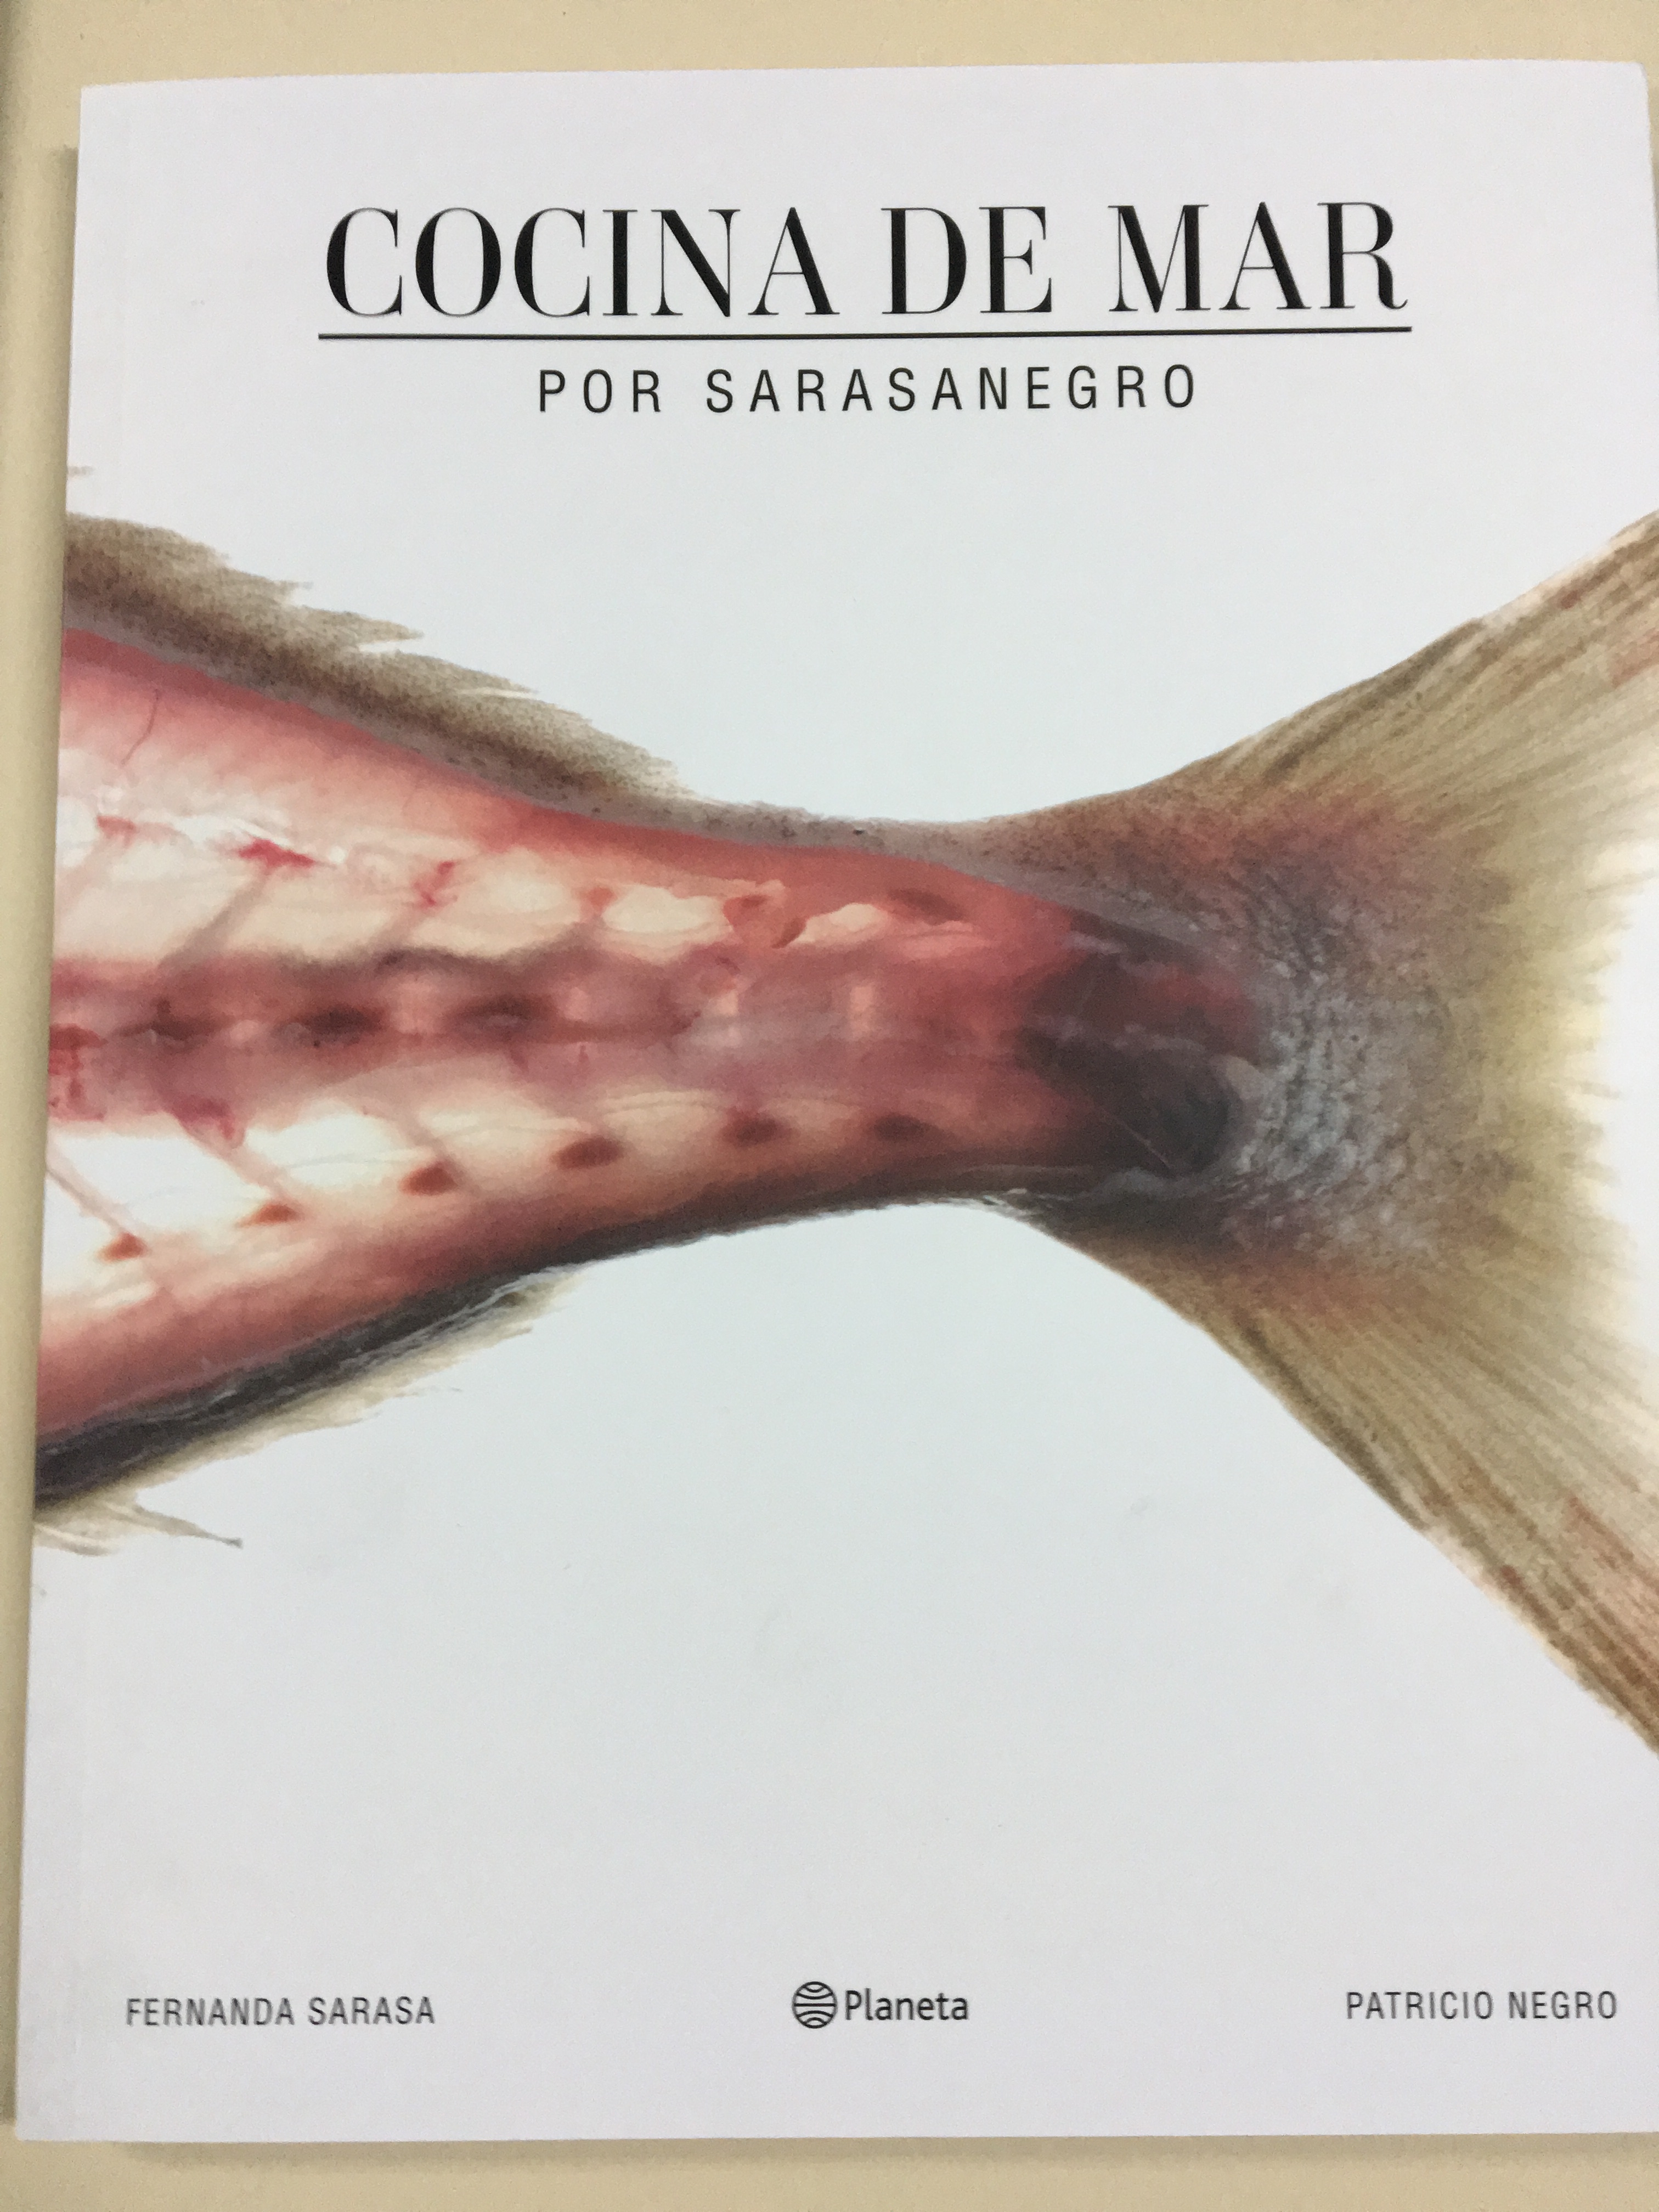  Cocina de Mar, por Sarasanegro. Portada del nuevo libro que acaba de editar Planeta.